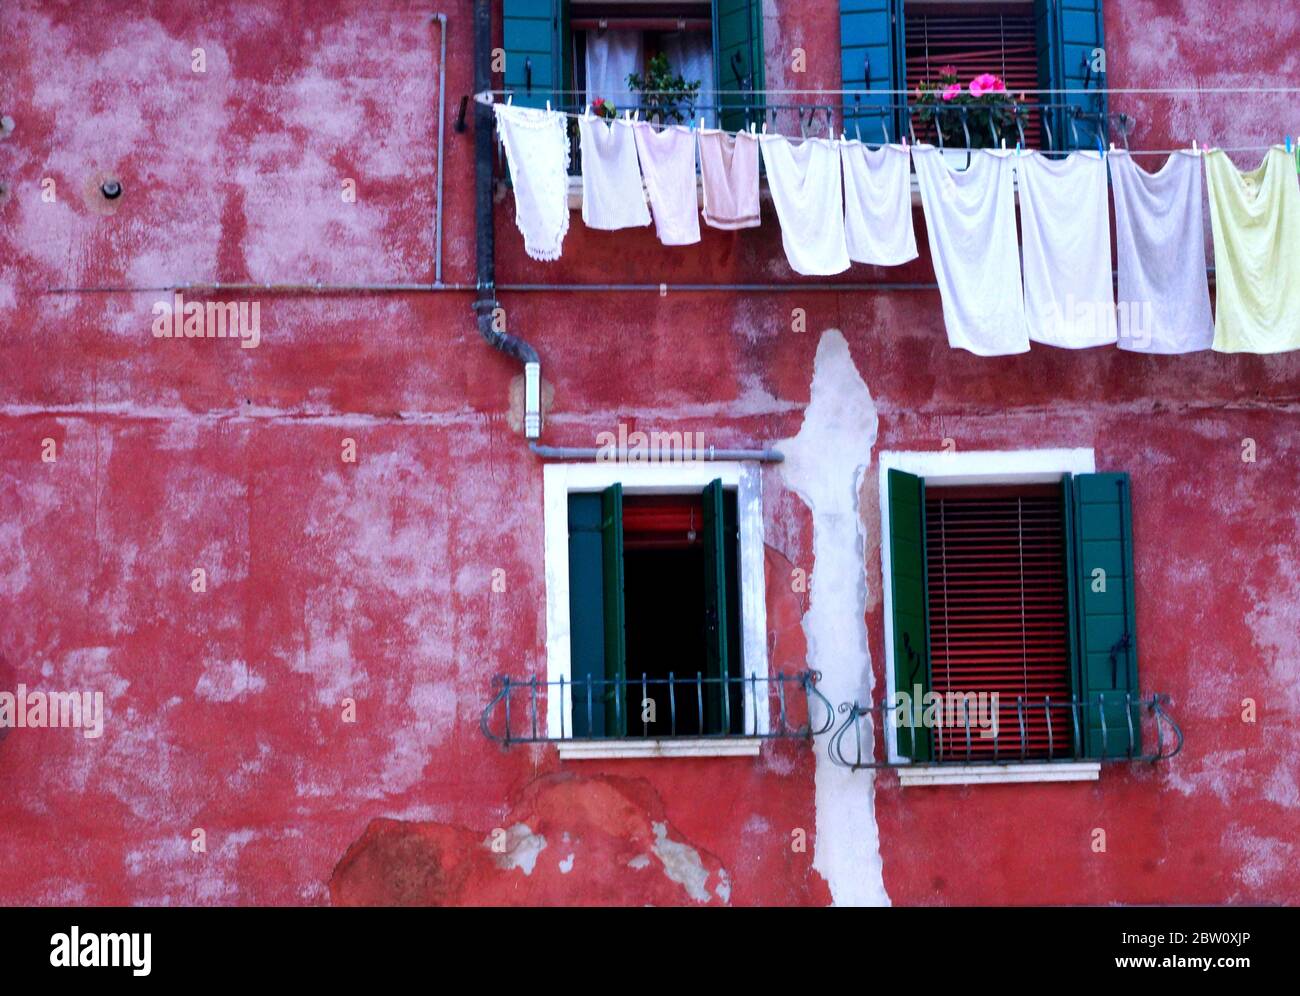 Gewaschen Tücher hängen an einer bunten Wand auf der Insel Burano, Italien, berühmt für seine exquisite Spitze Herstellung Tradition. Stockfoto